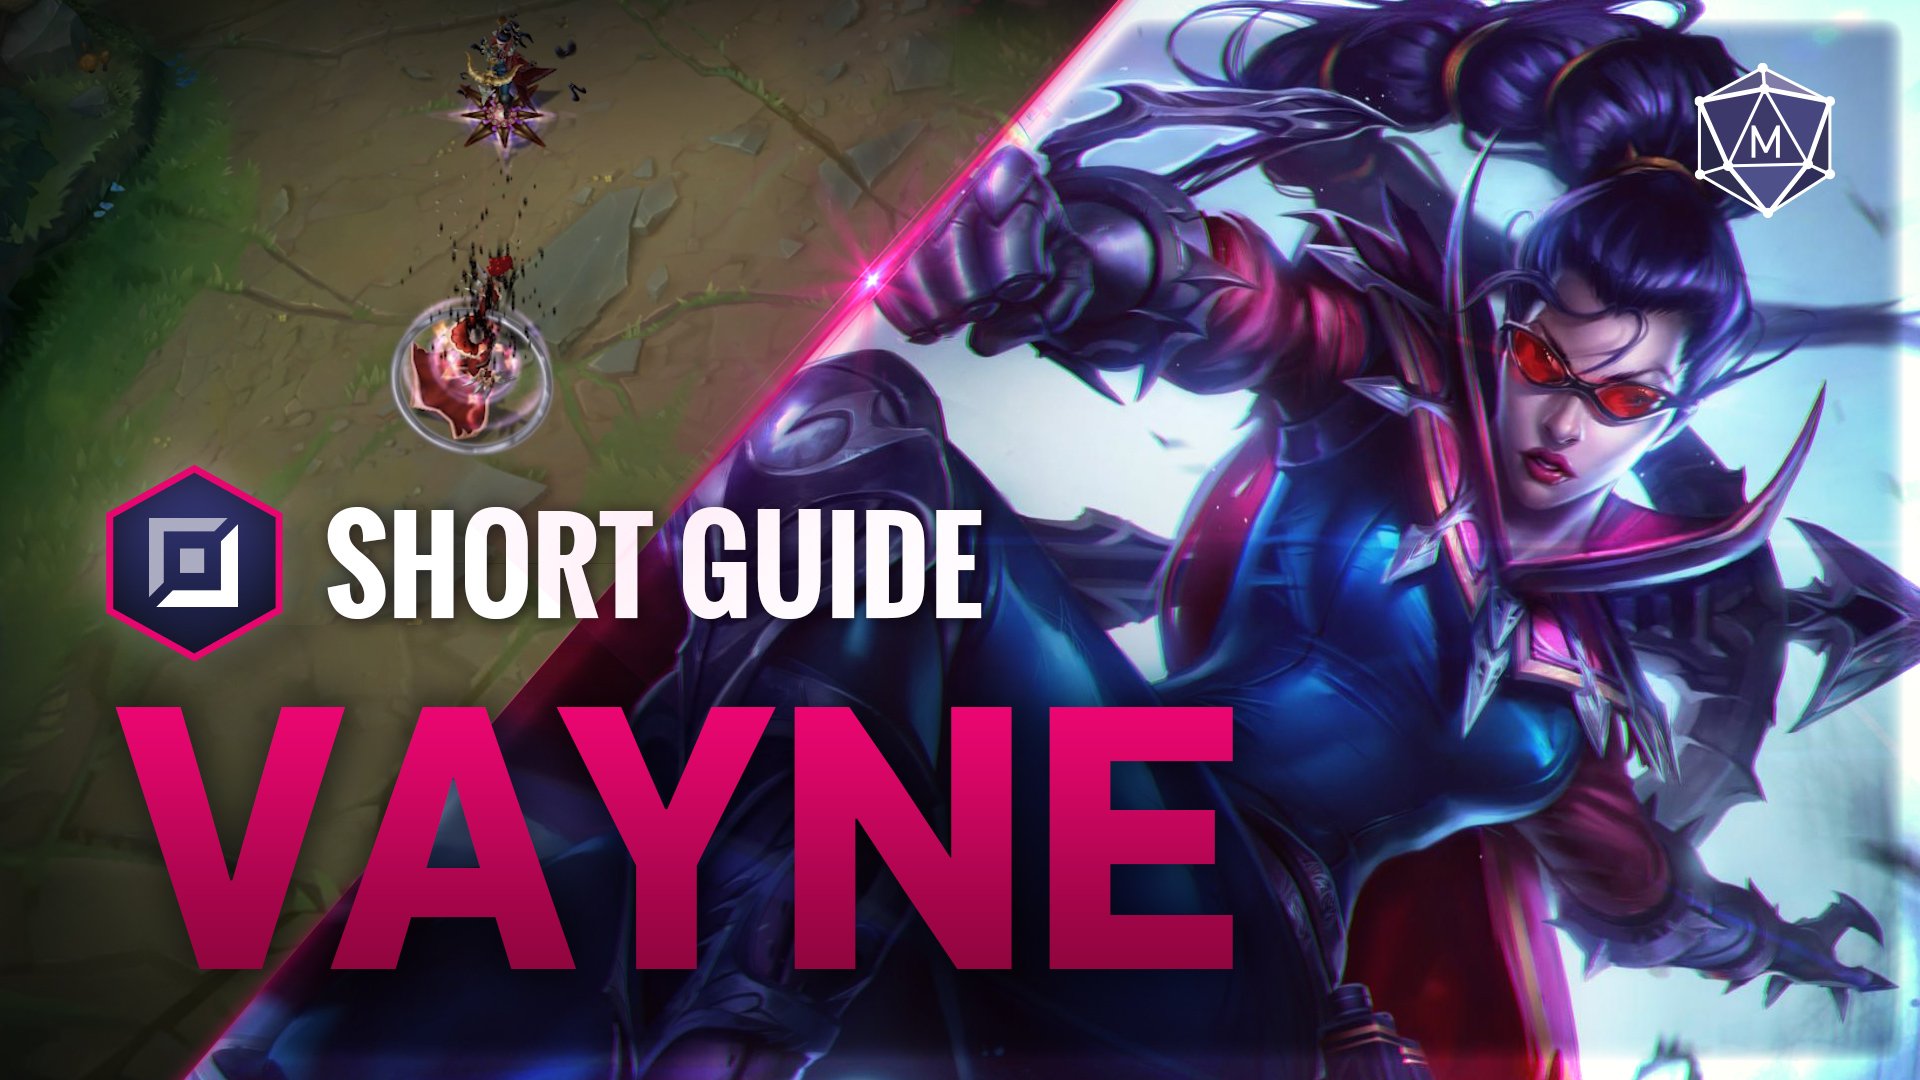 Vayne expert guide